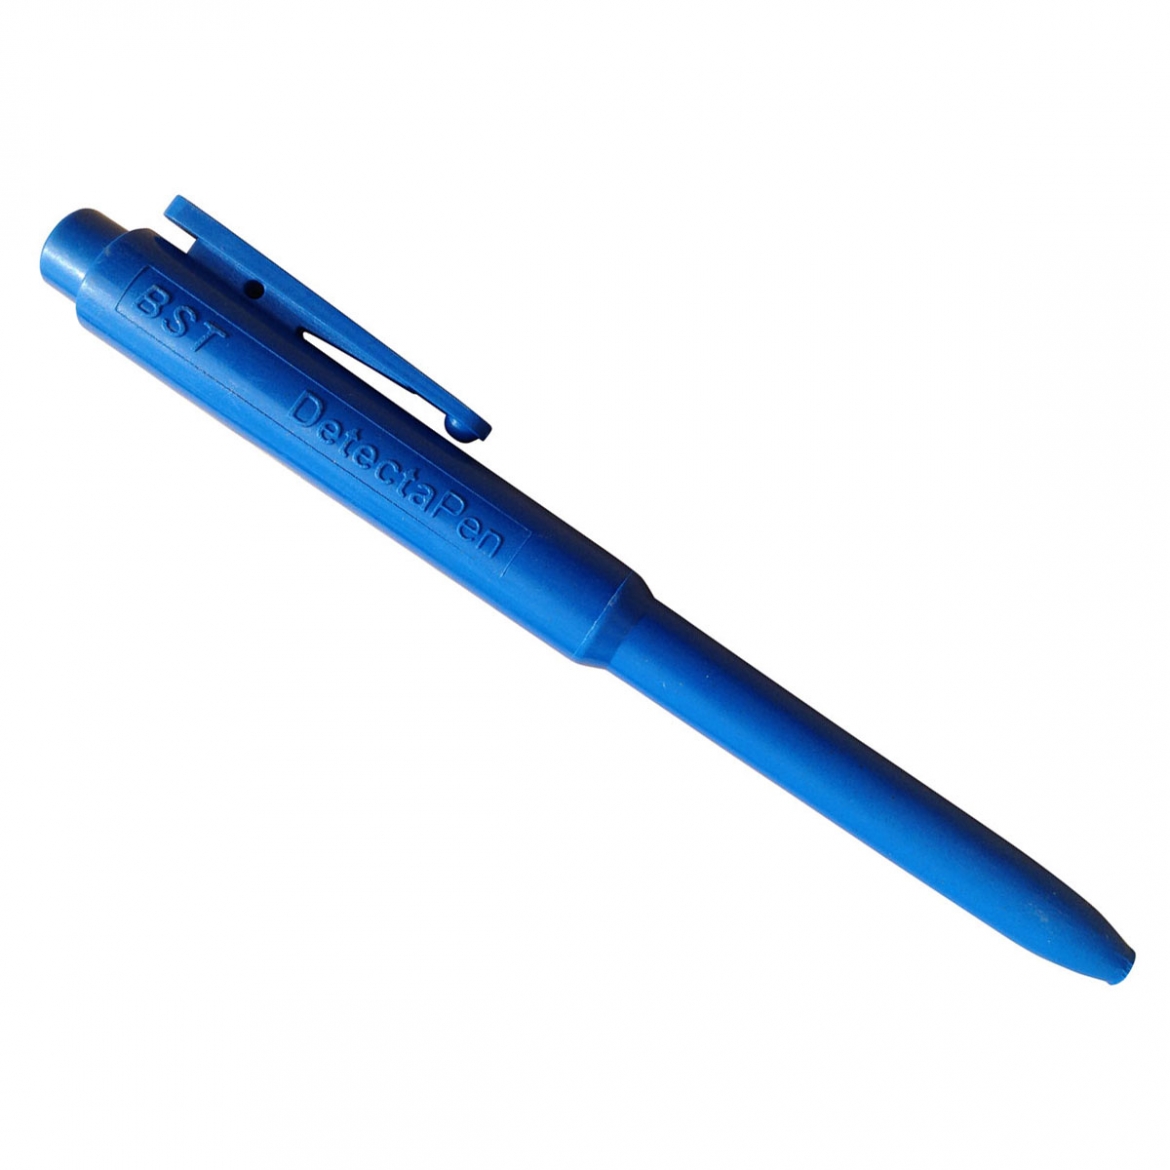 Metal detectable, retractable pen